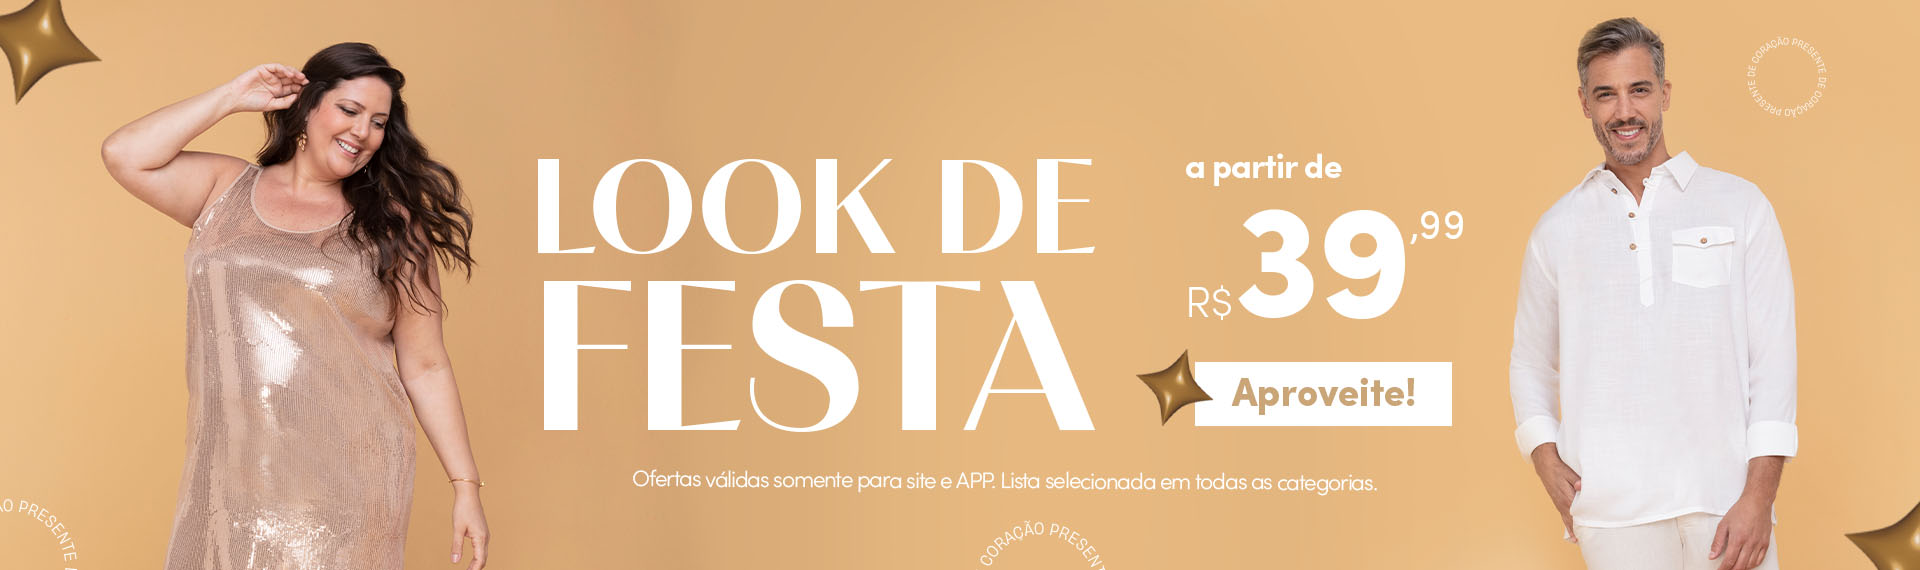 Look de Festa - a partir de R$39,99 - natal